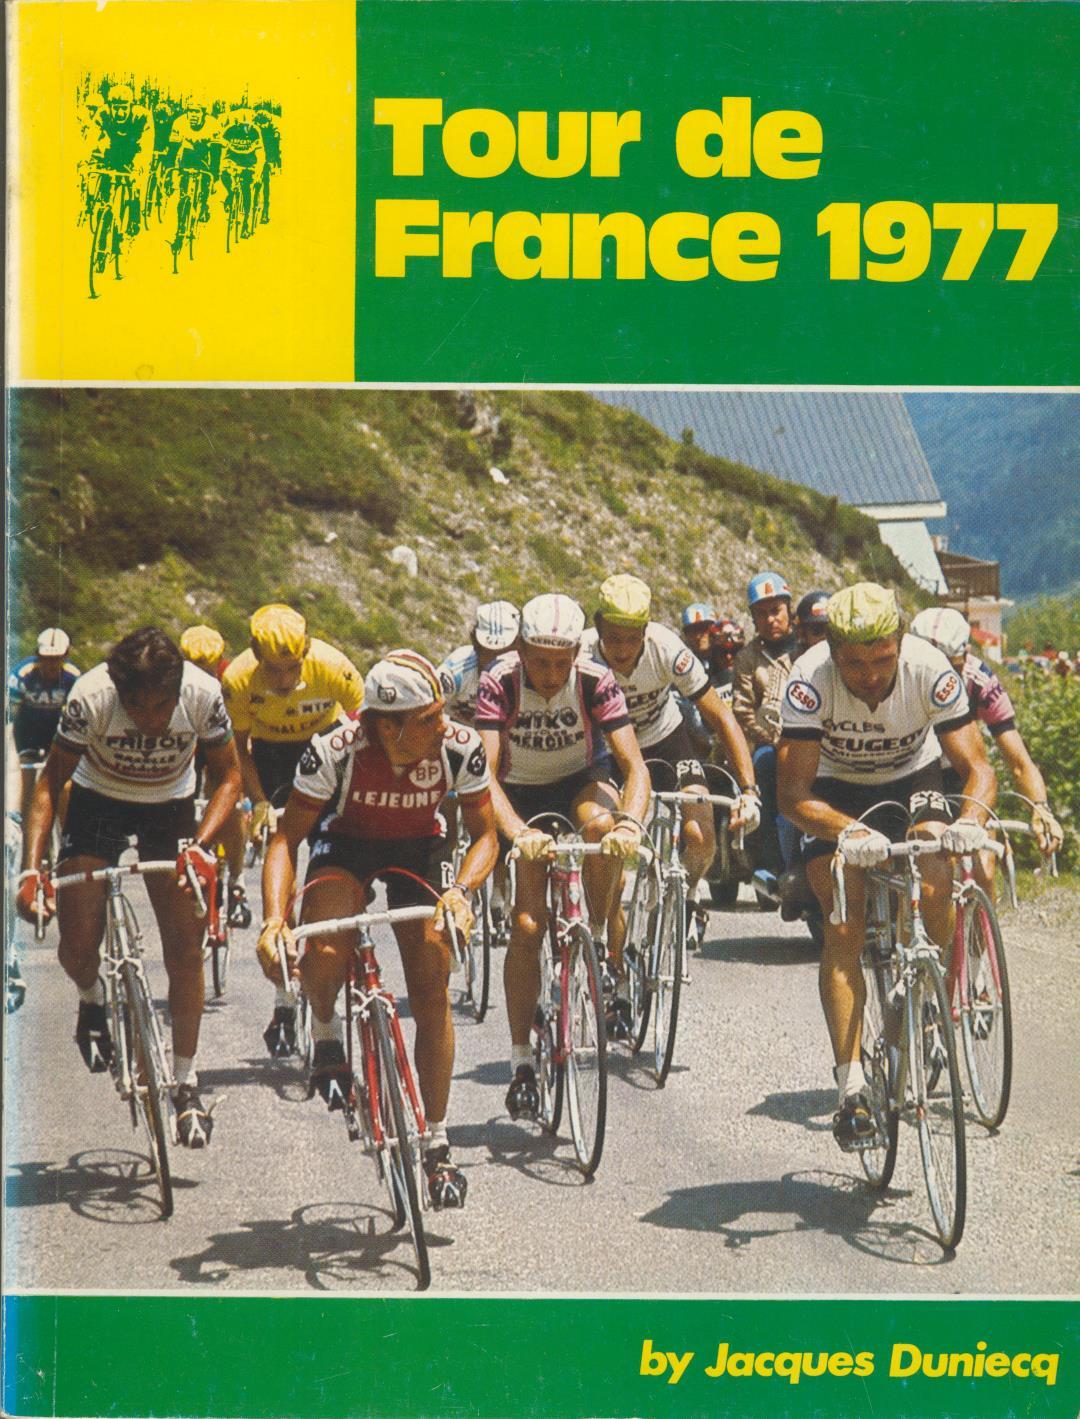 1977 tour de france